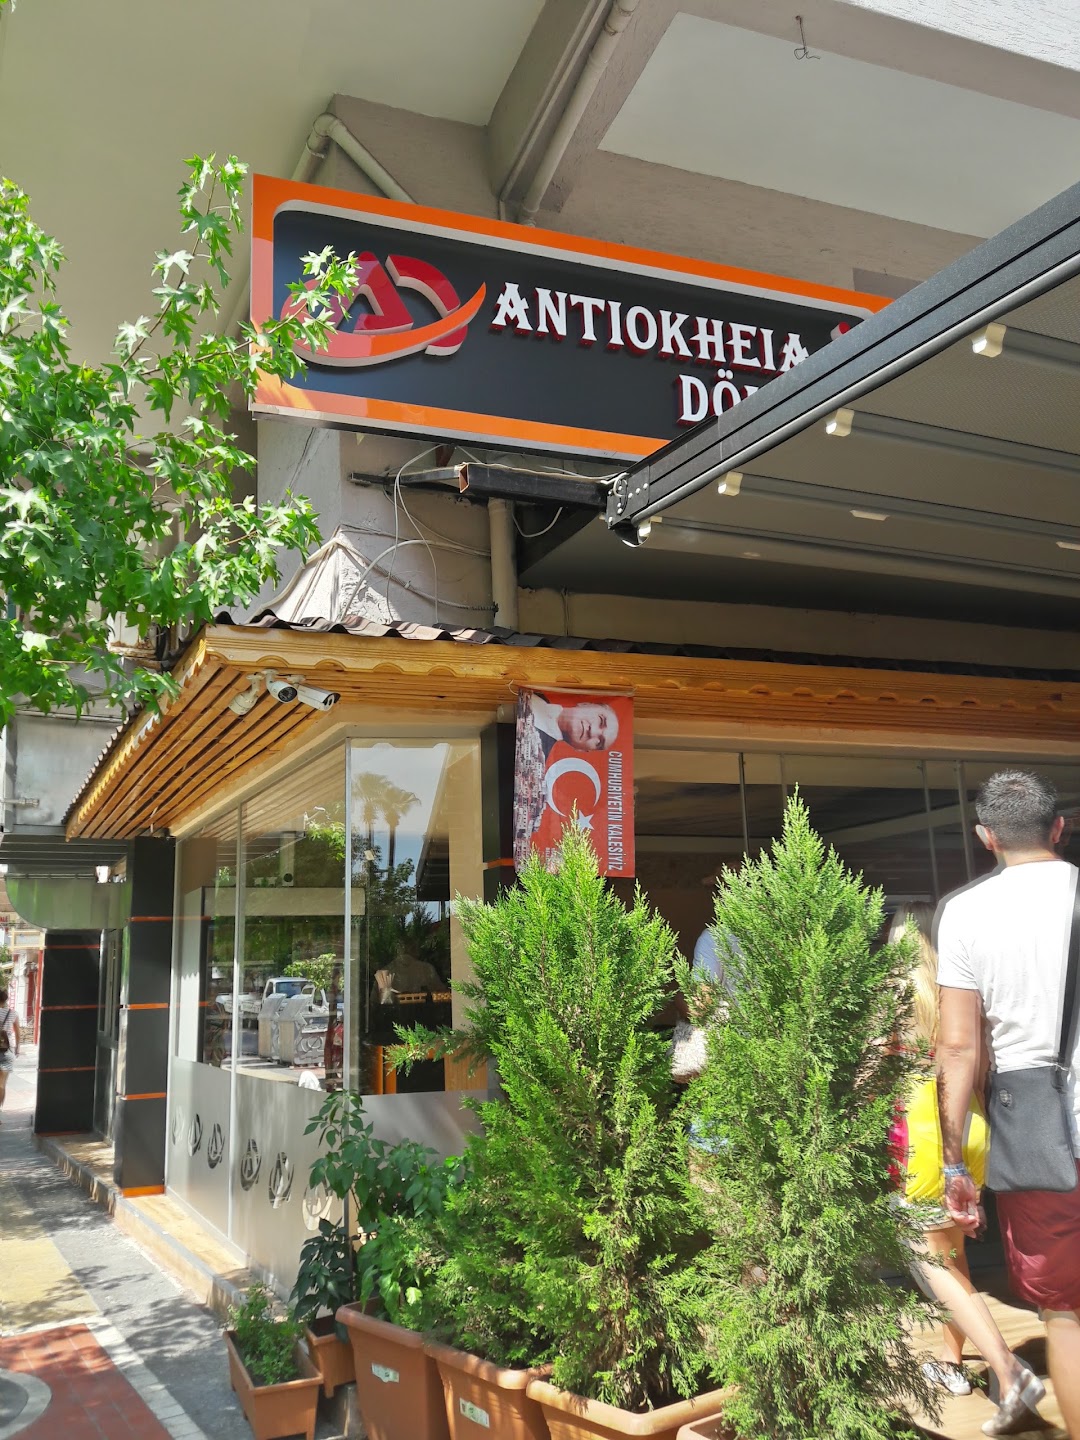 Antiokheia Restoran Cafe